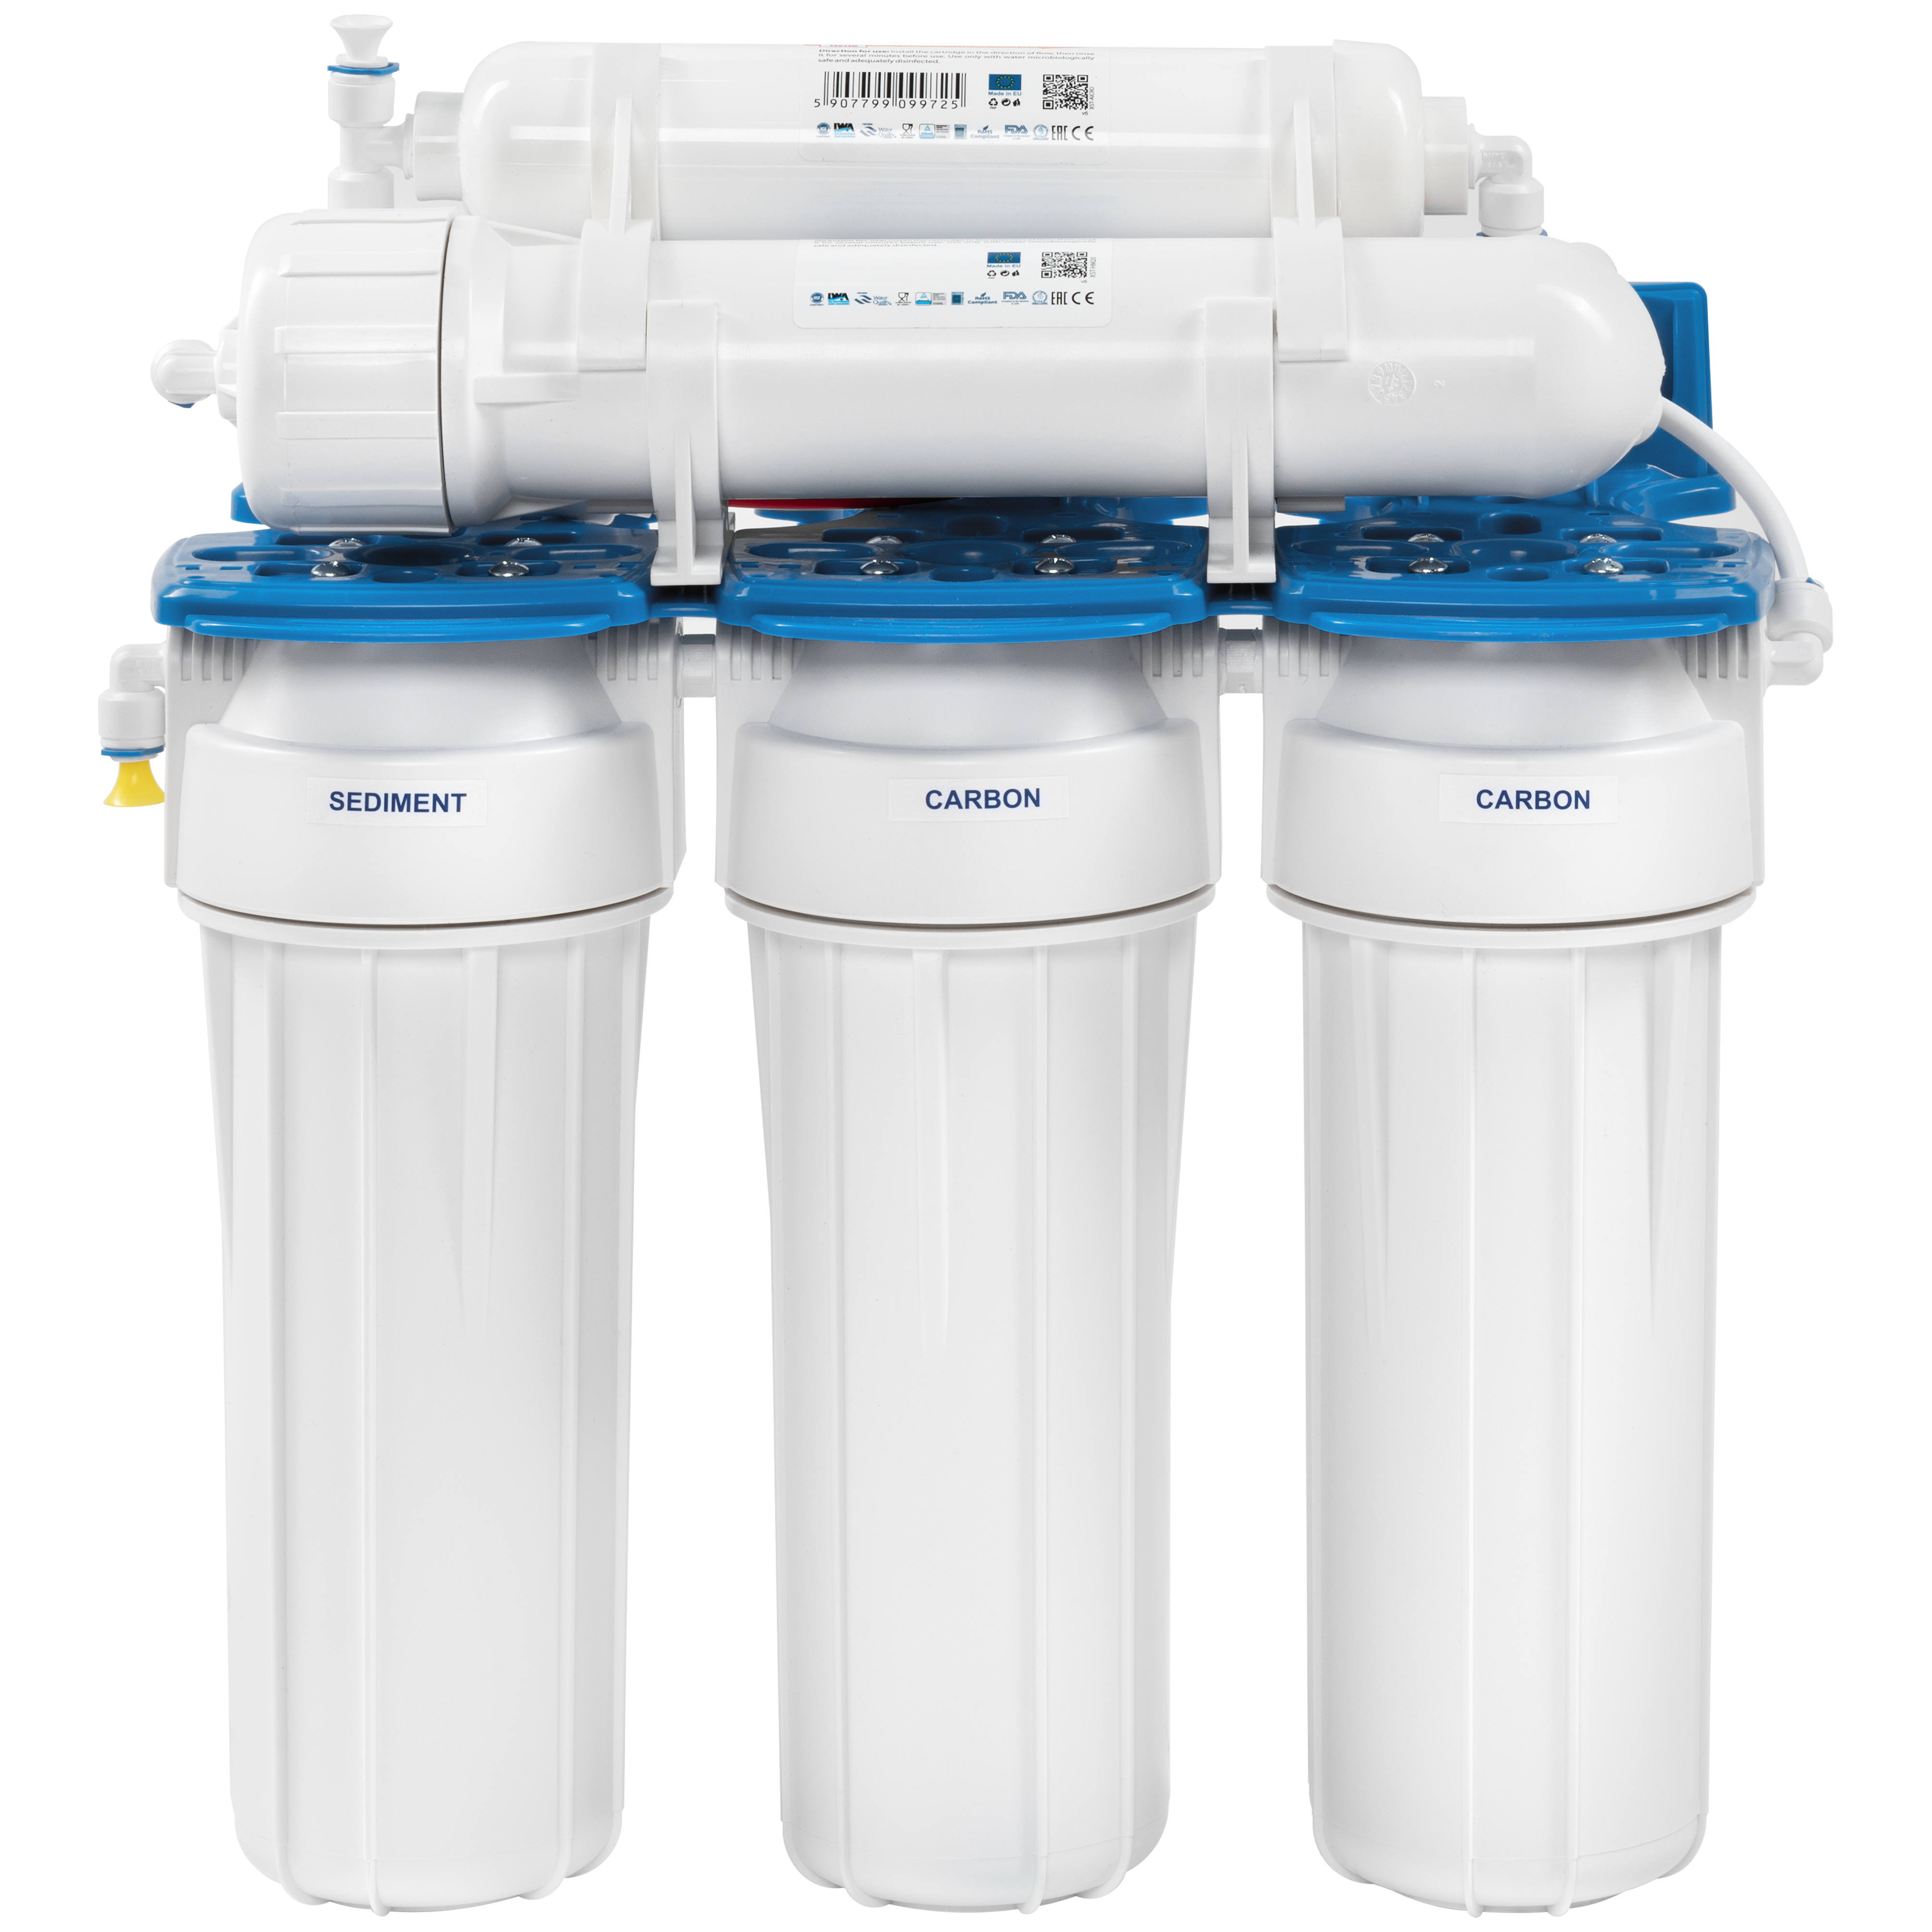 Фильтр для очистки воды в квартире Aquafilter RX55145516